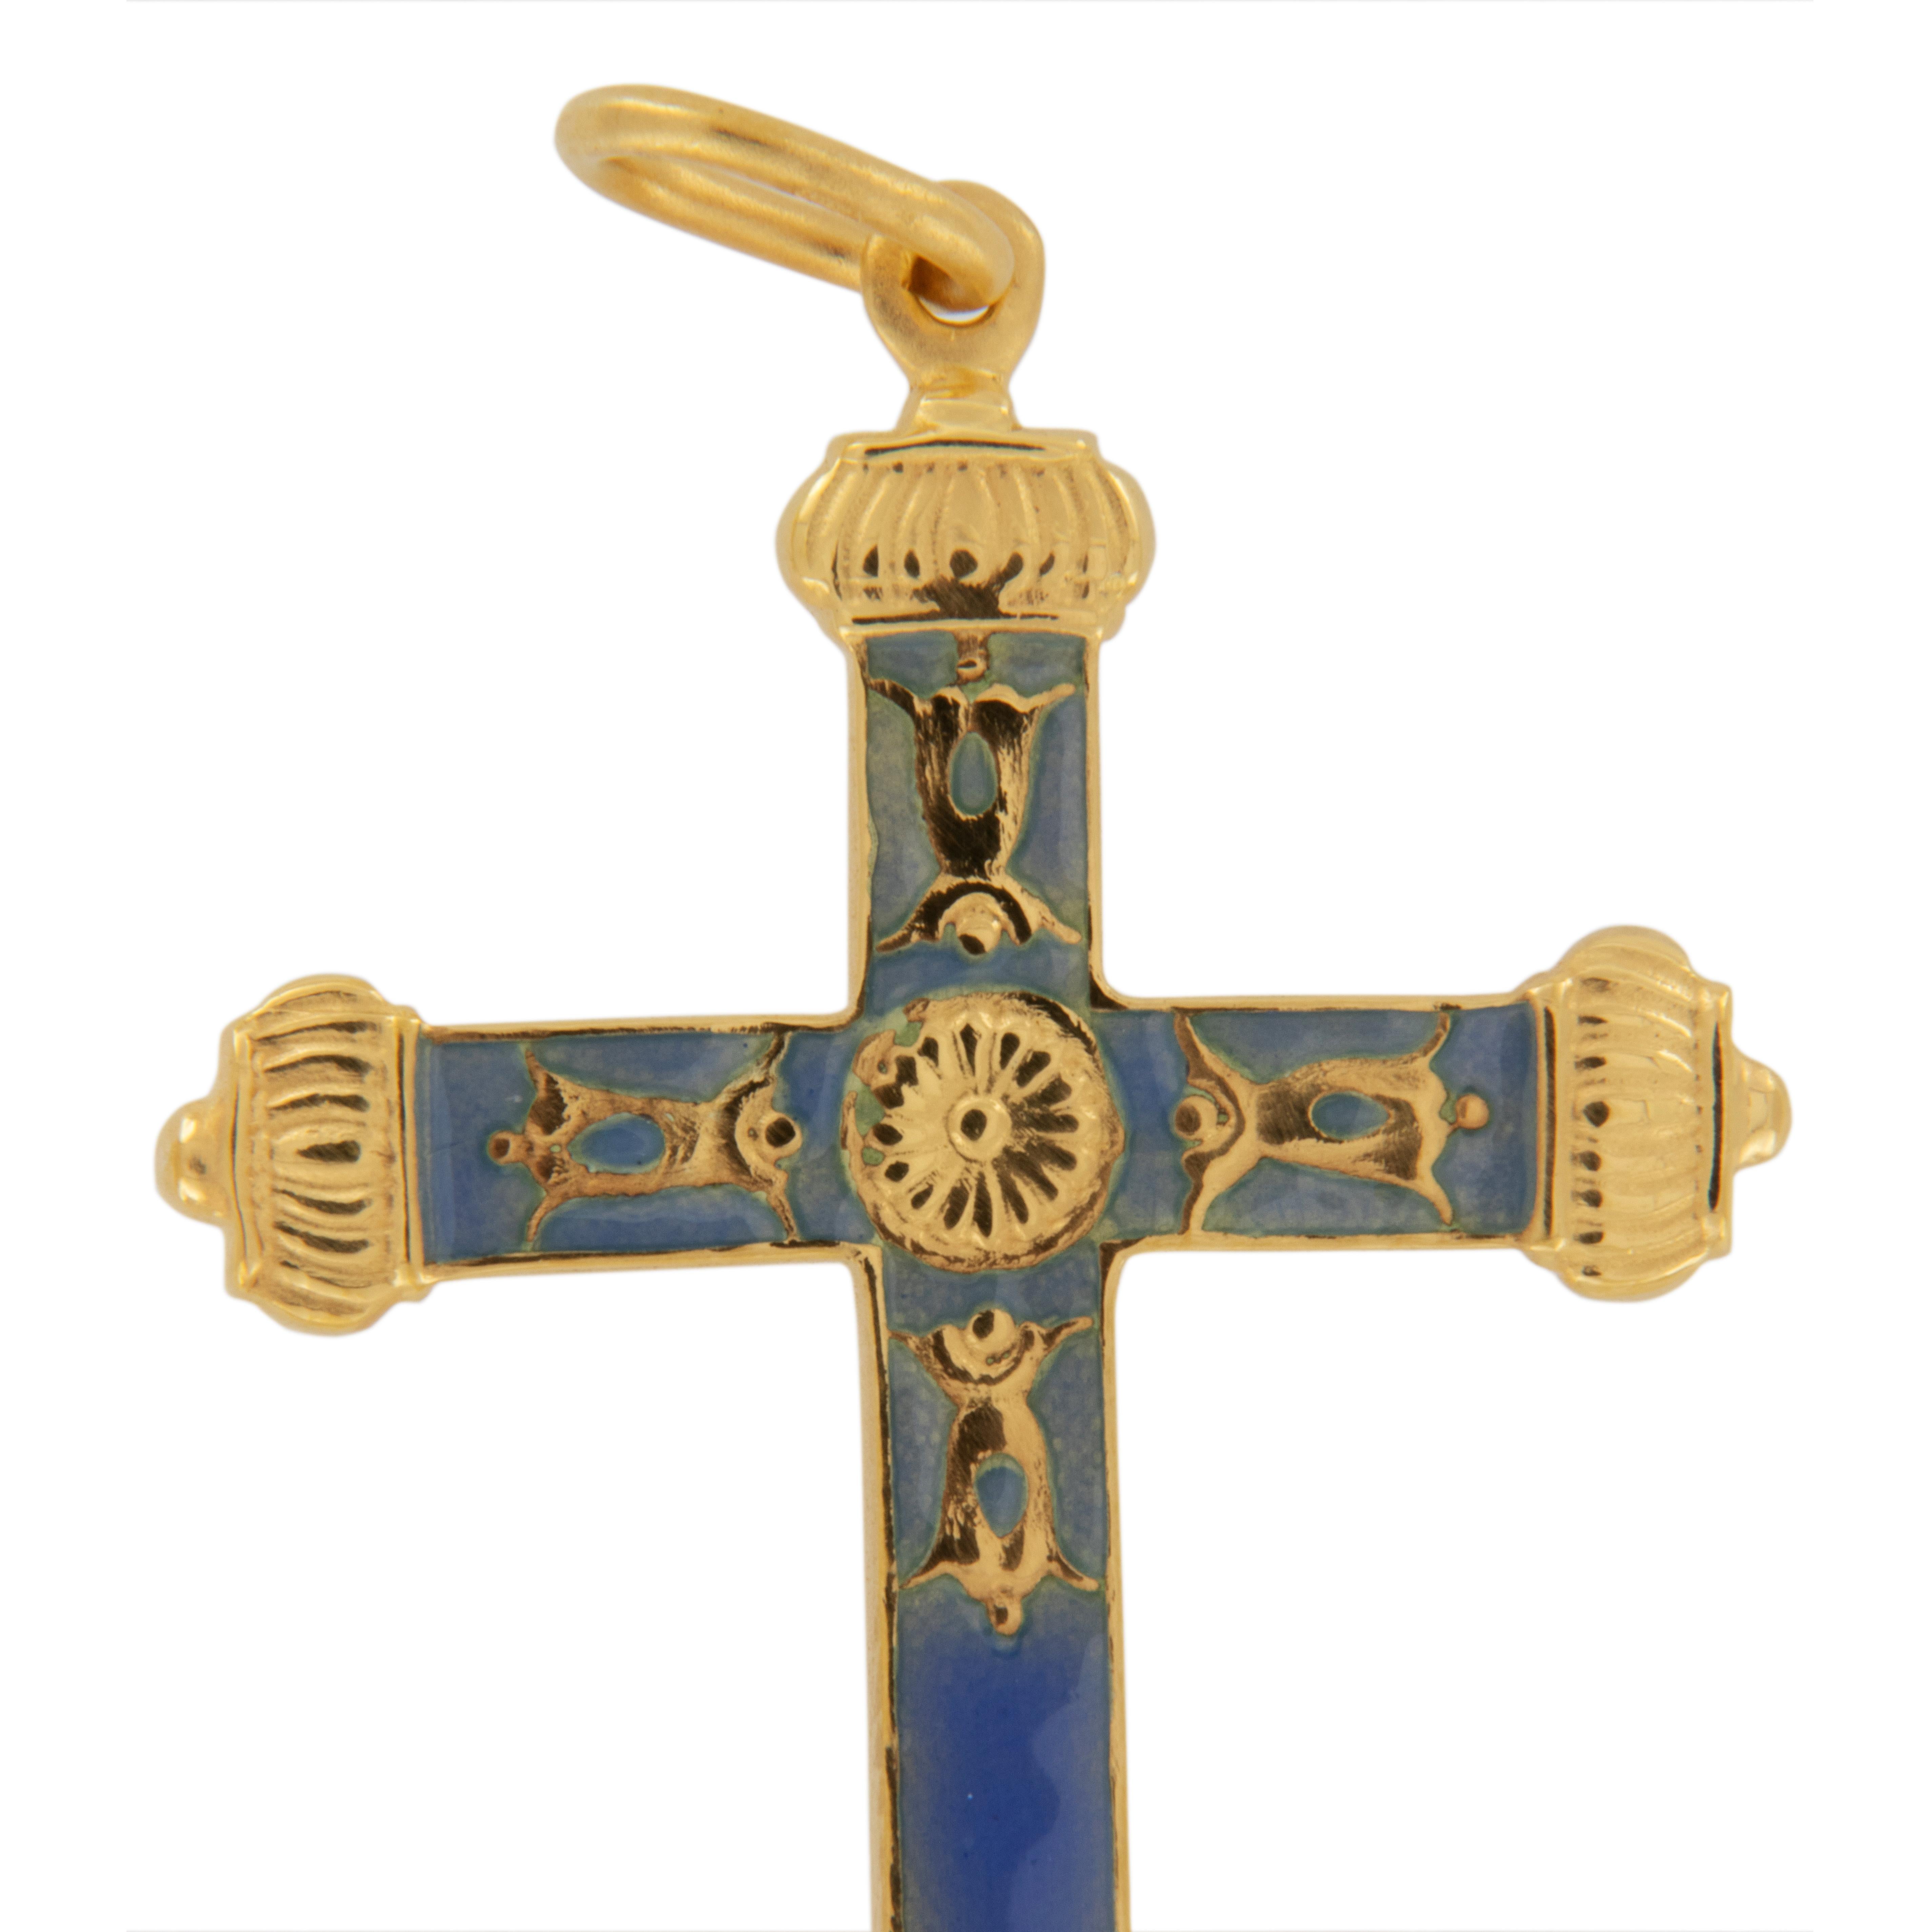 Fabriqué en Espagne par la société Masriera, de renommée mondiale, spécialisée dans l'Art Nouveau et les techniques d'émail cuit - ce pendentif en forme de croix en or jaune 18 carats 